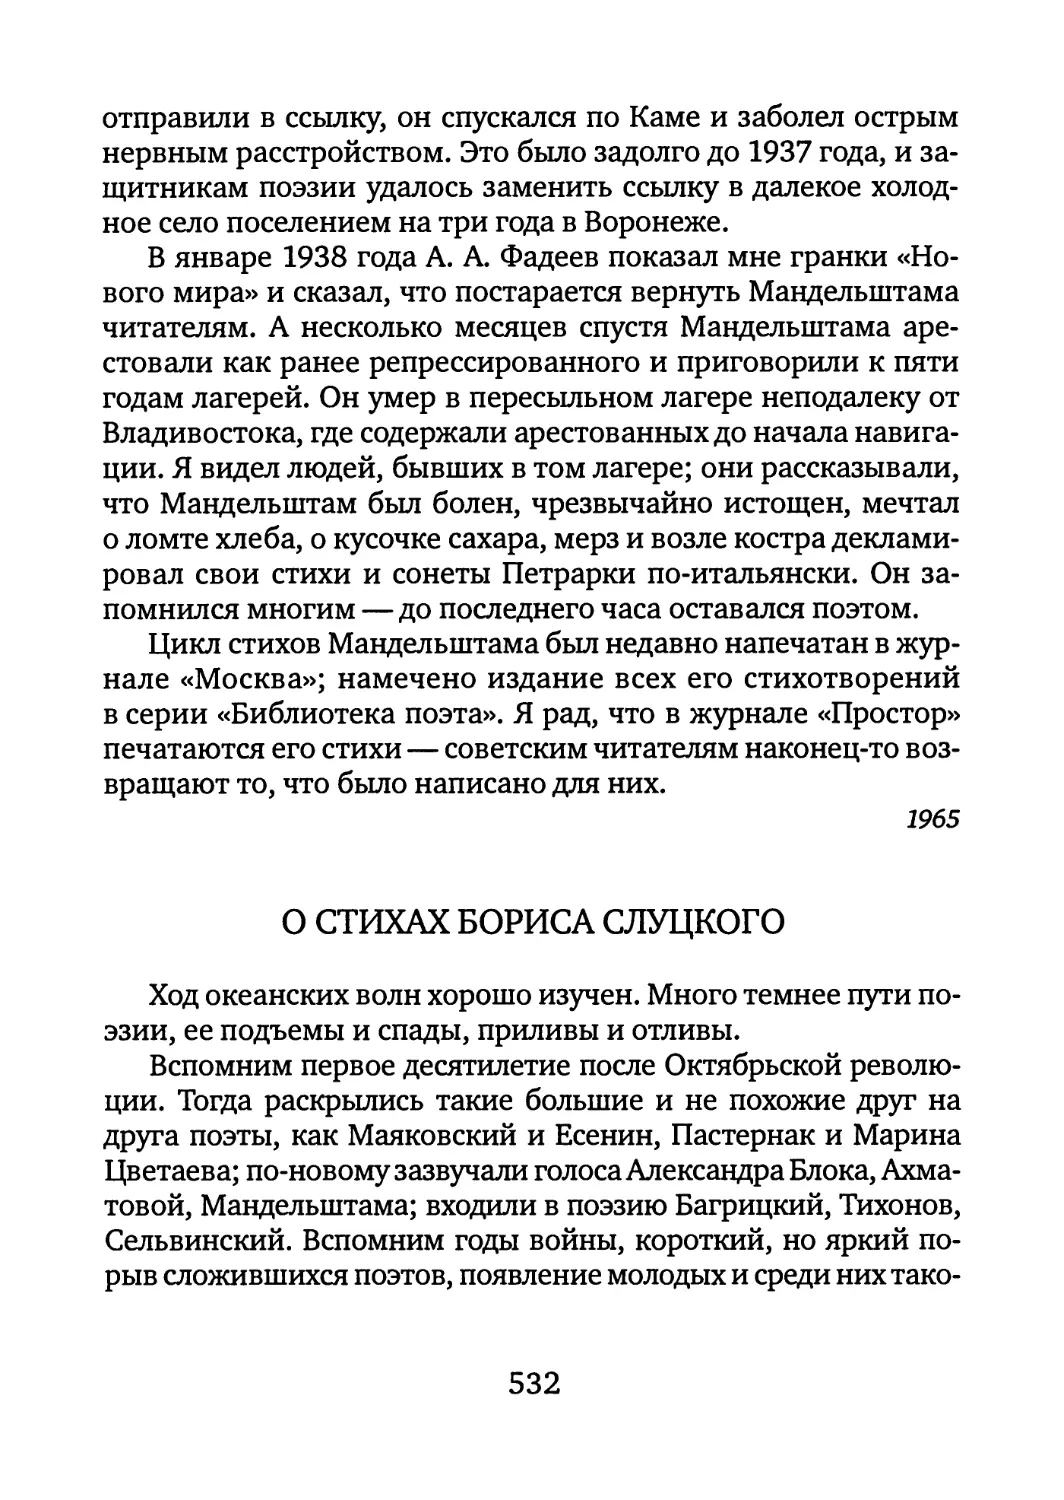 О стихах Бориса Слуцкого